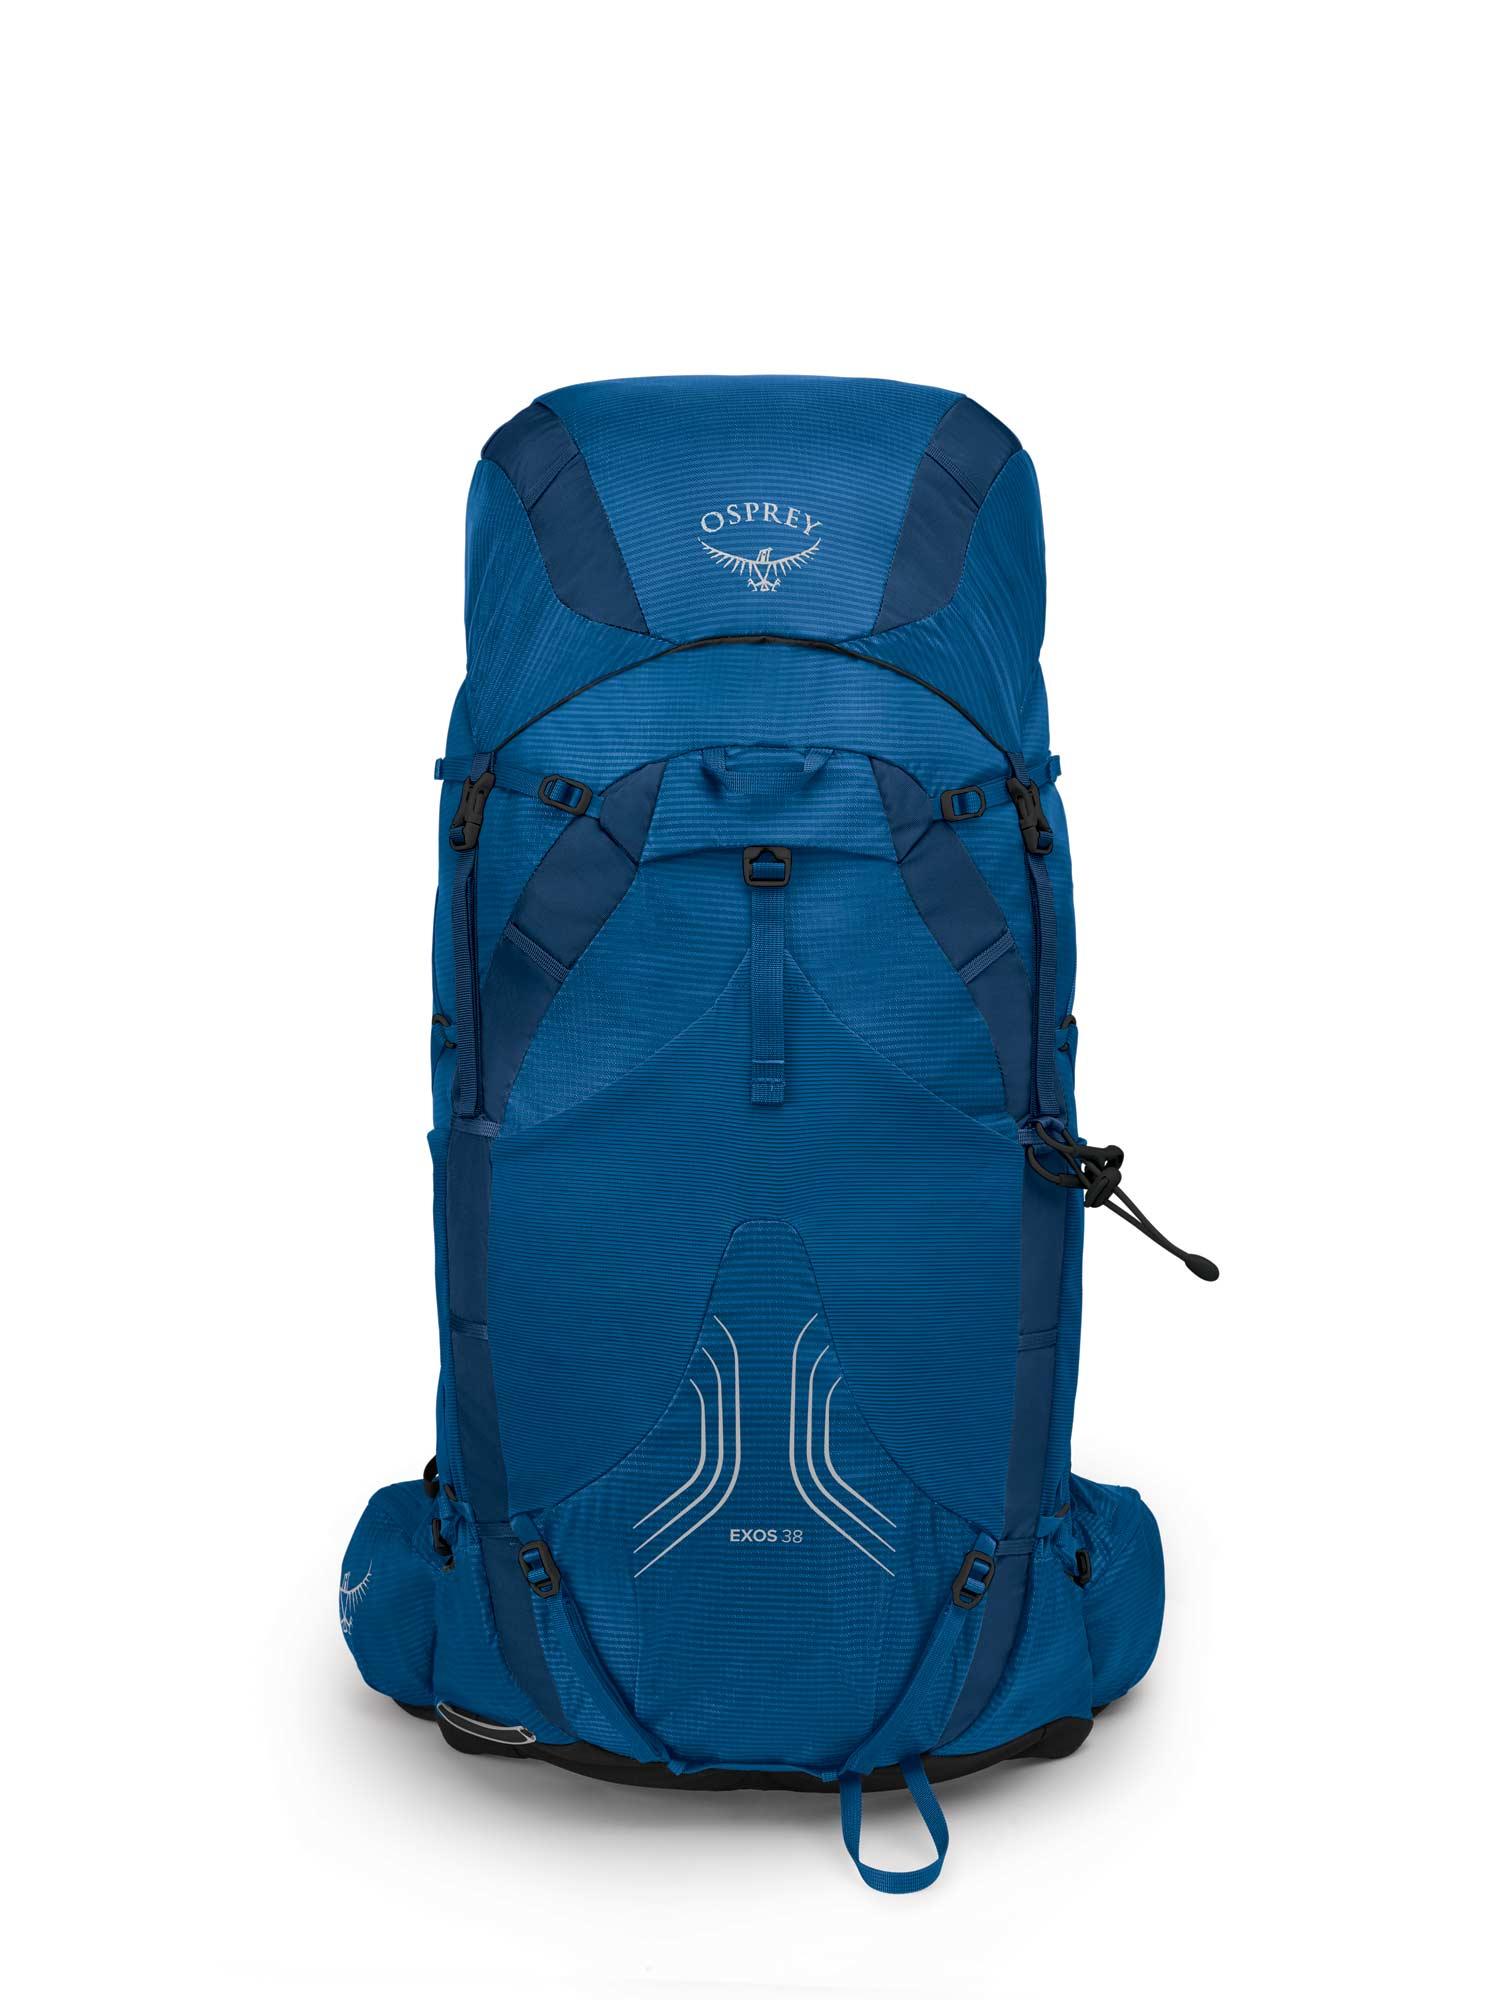 Selected image for OSPREY Muški ranac za planinarenje Exos 38 Backpack plavi